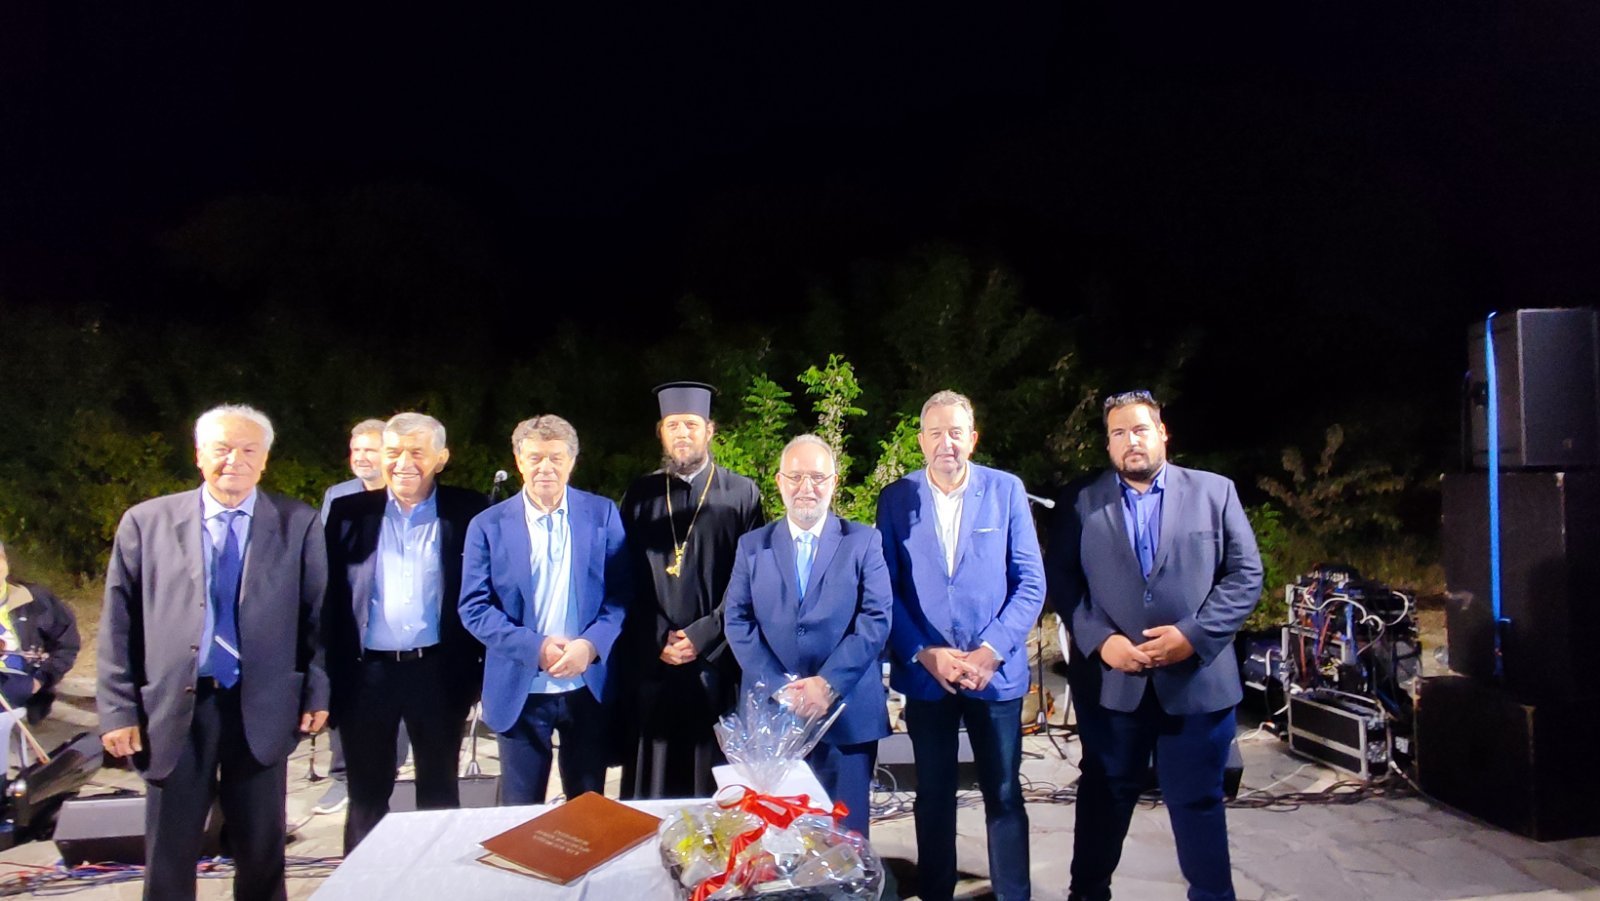 Ο Δήμος Μαρωνείας Σαπών υποδέχθηκε τον Ότο Ρεχάγκελ και τους σύνεδρους του 30ού διεθνούς συνεδρίου Φυσικής Αγωγής και Αθλητισμού (fotos)